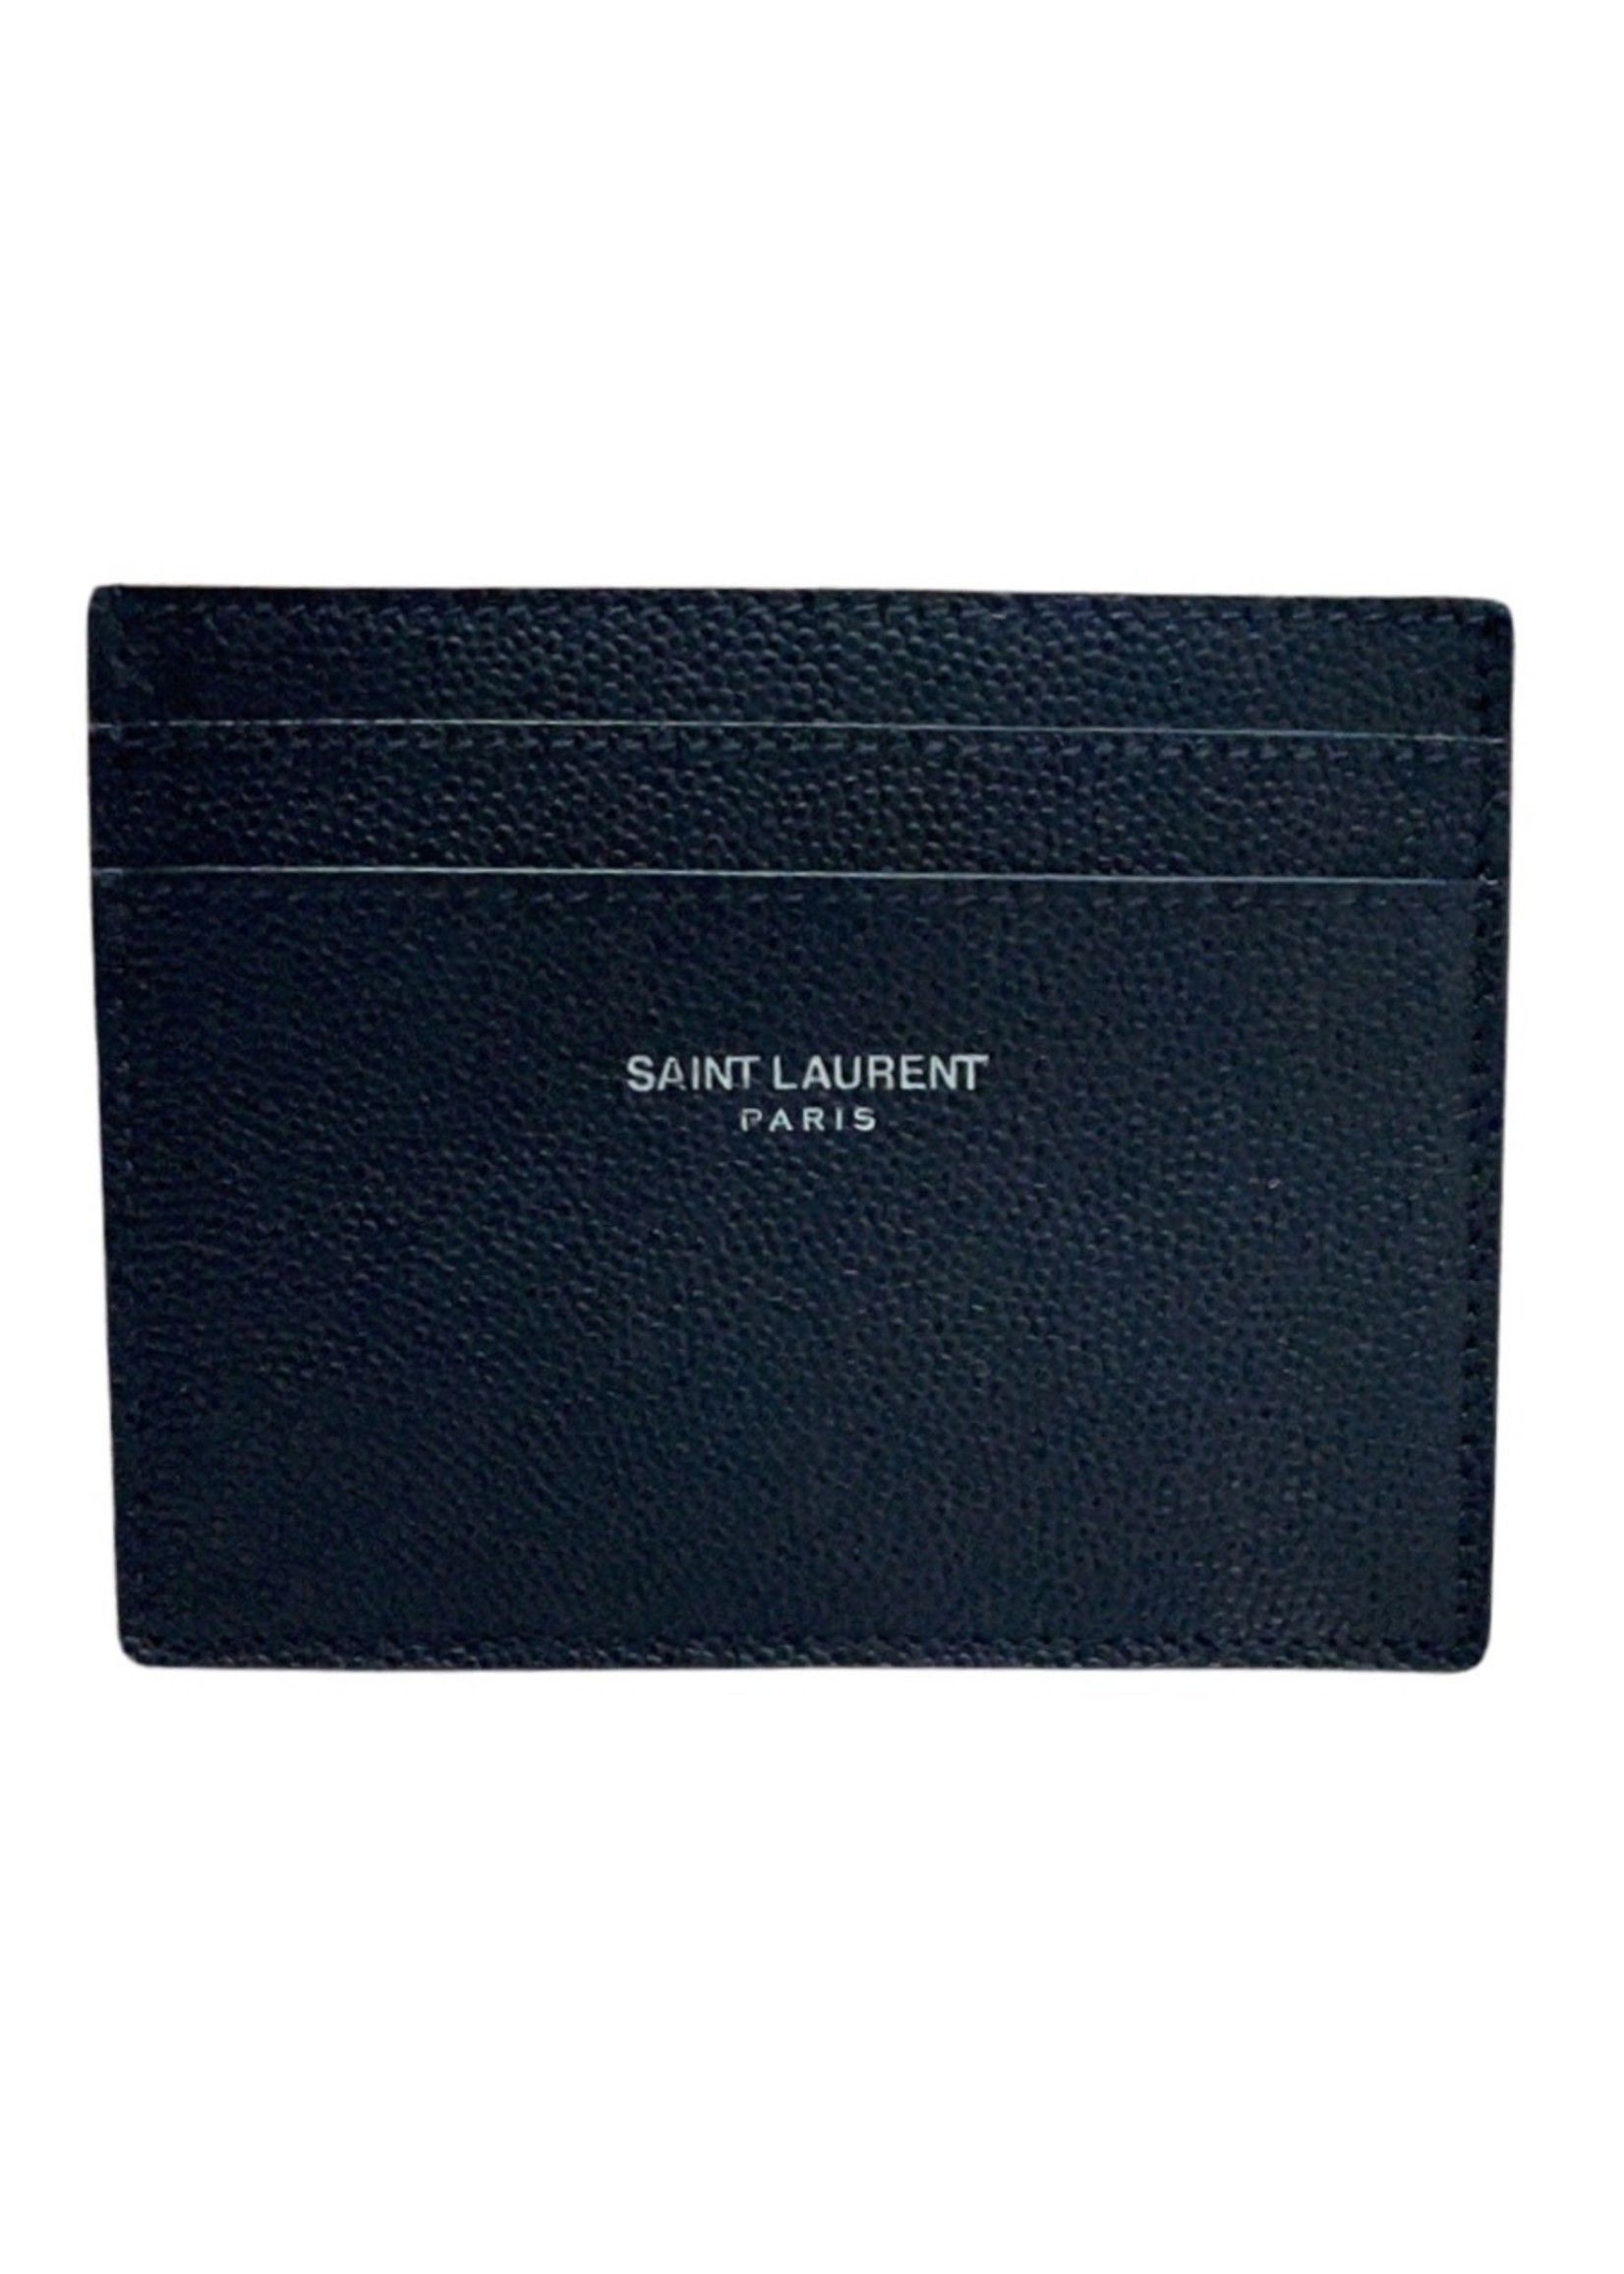 SAINT LAURENT CREDIT CARD CASE